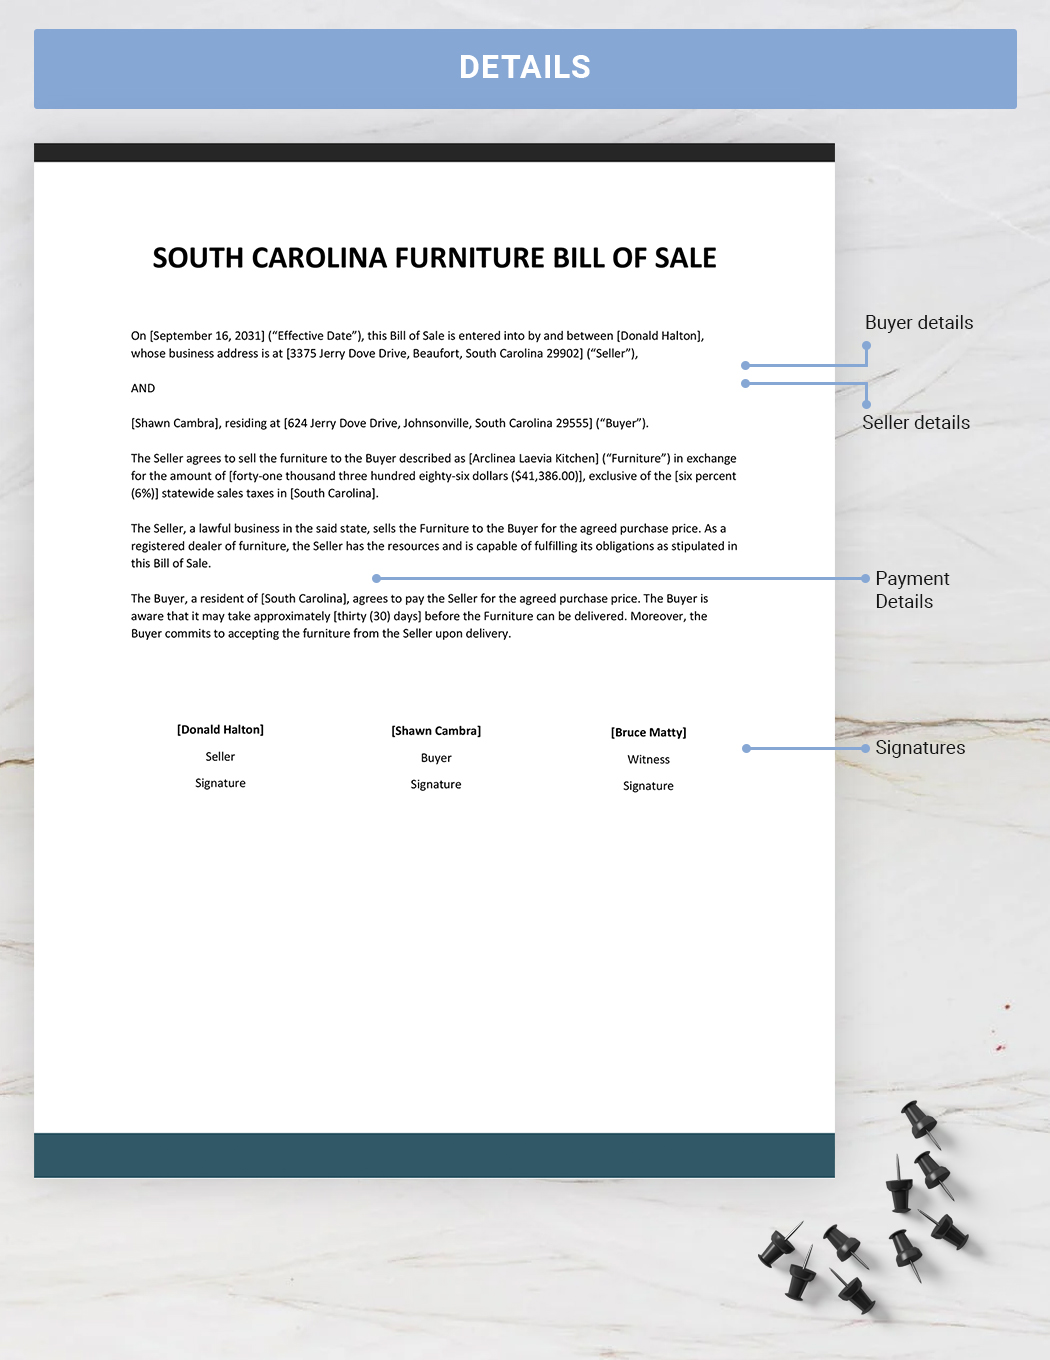 South Carolina Furniture Bill Of Sale Template